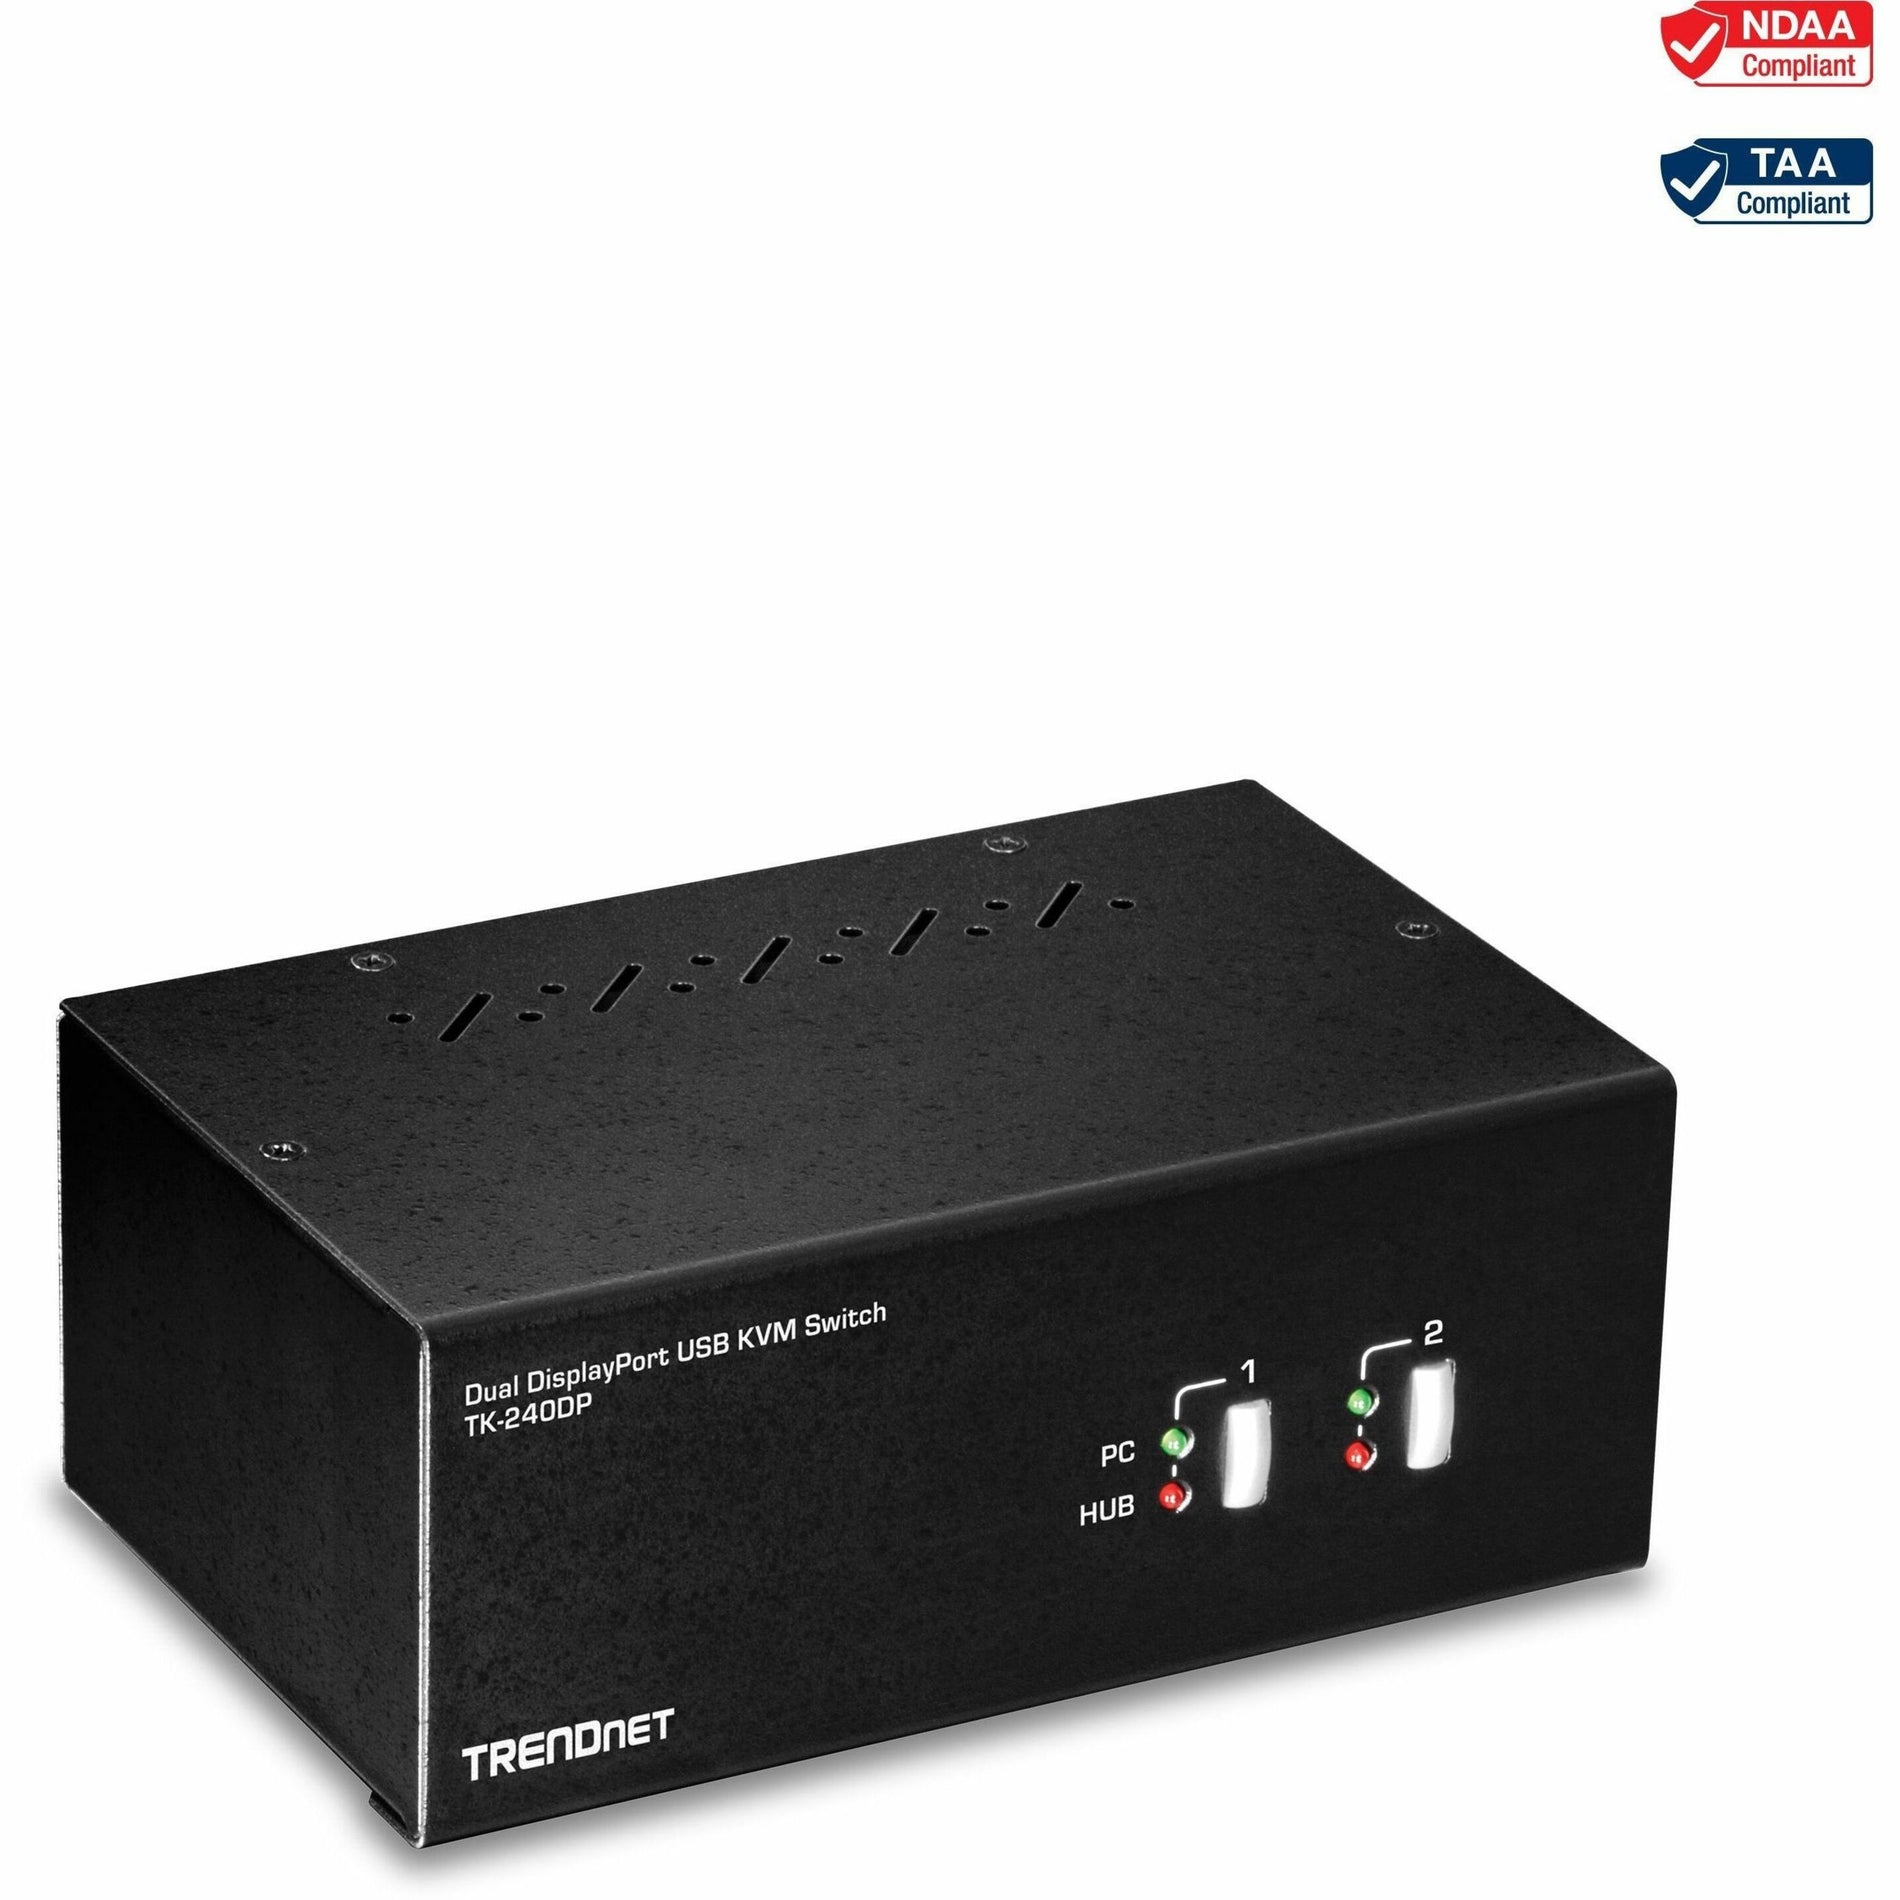 TRENDnet TK-240DP 2-Port Dual Monitor DisplayPort KVM Switch, 3840 x 2160 Resolution, TAA Compliant